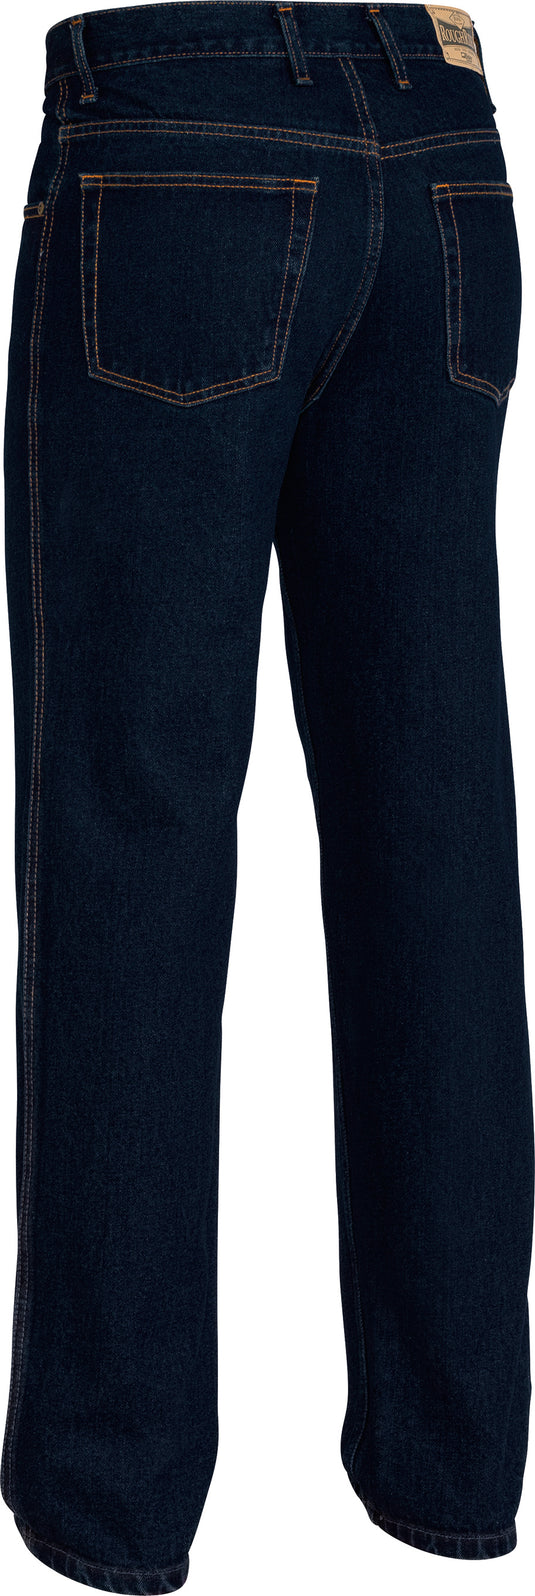 Wholesale BP6050 Bisley Rough Rider Denim Jeans - Long Printed or Blank